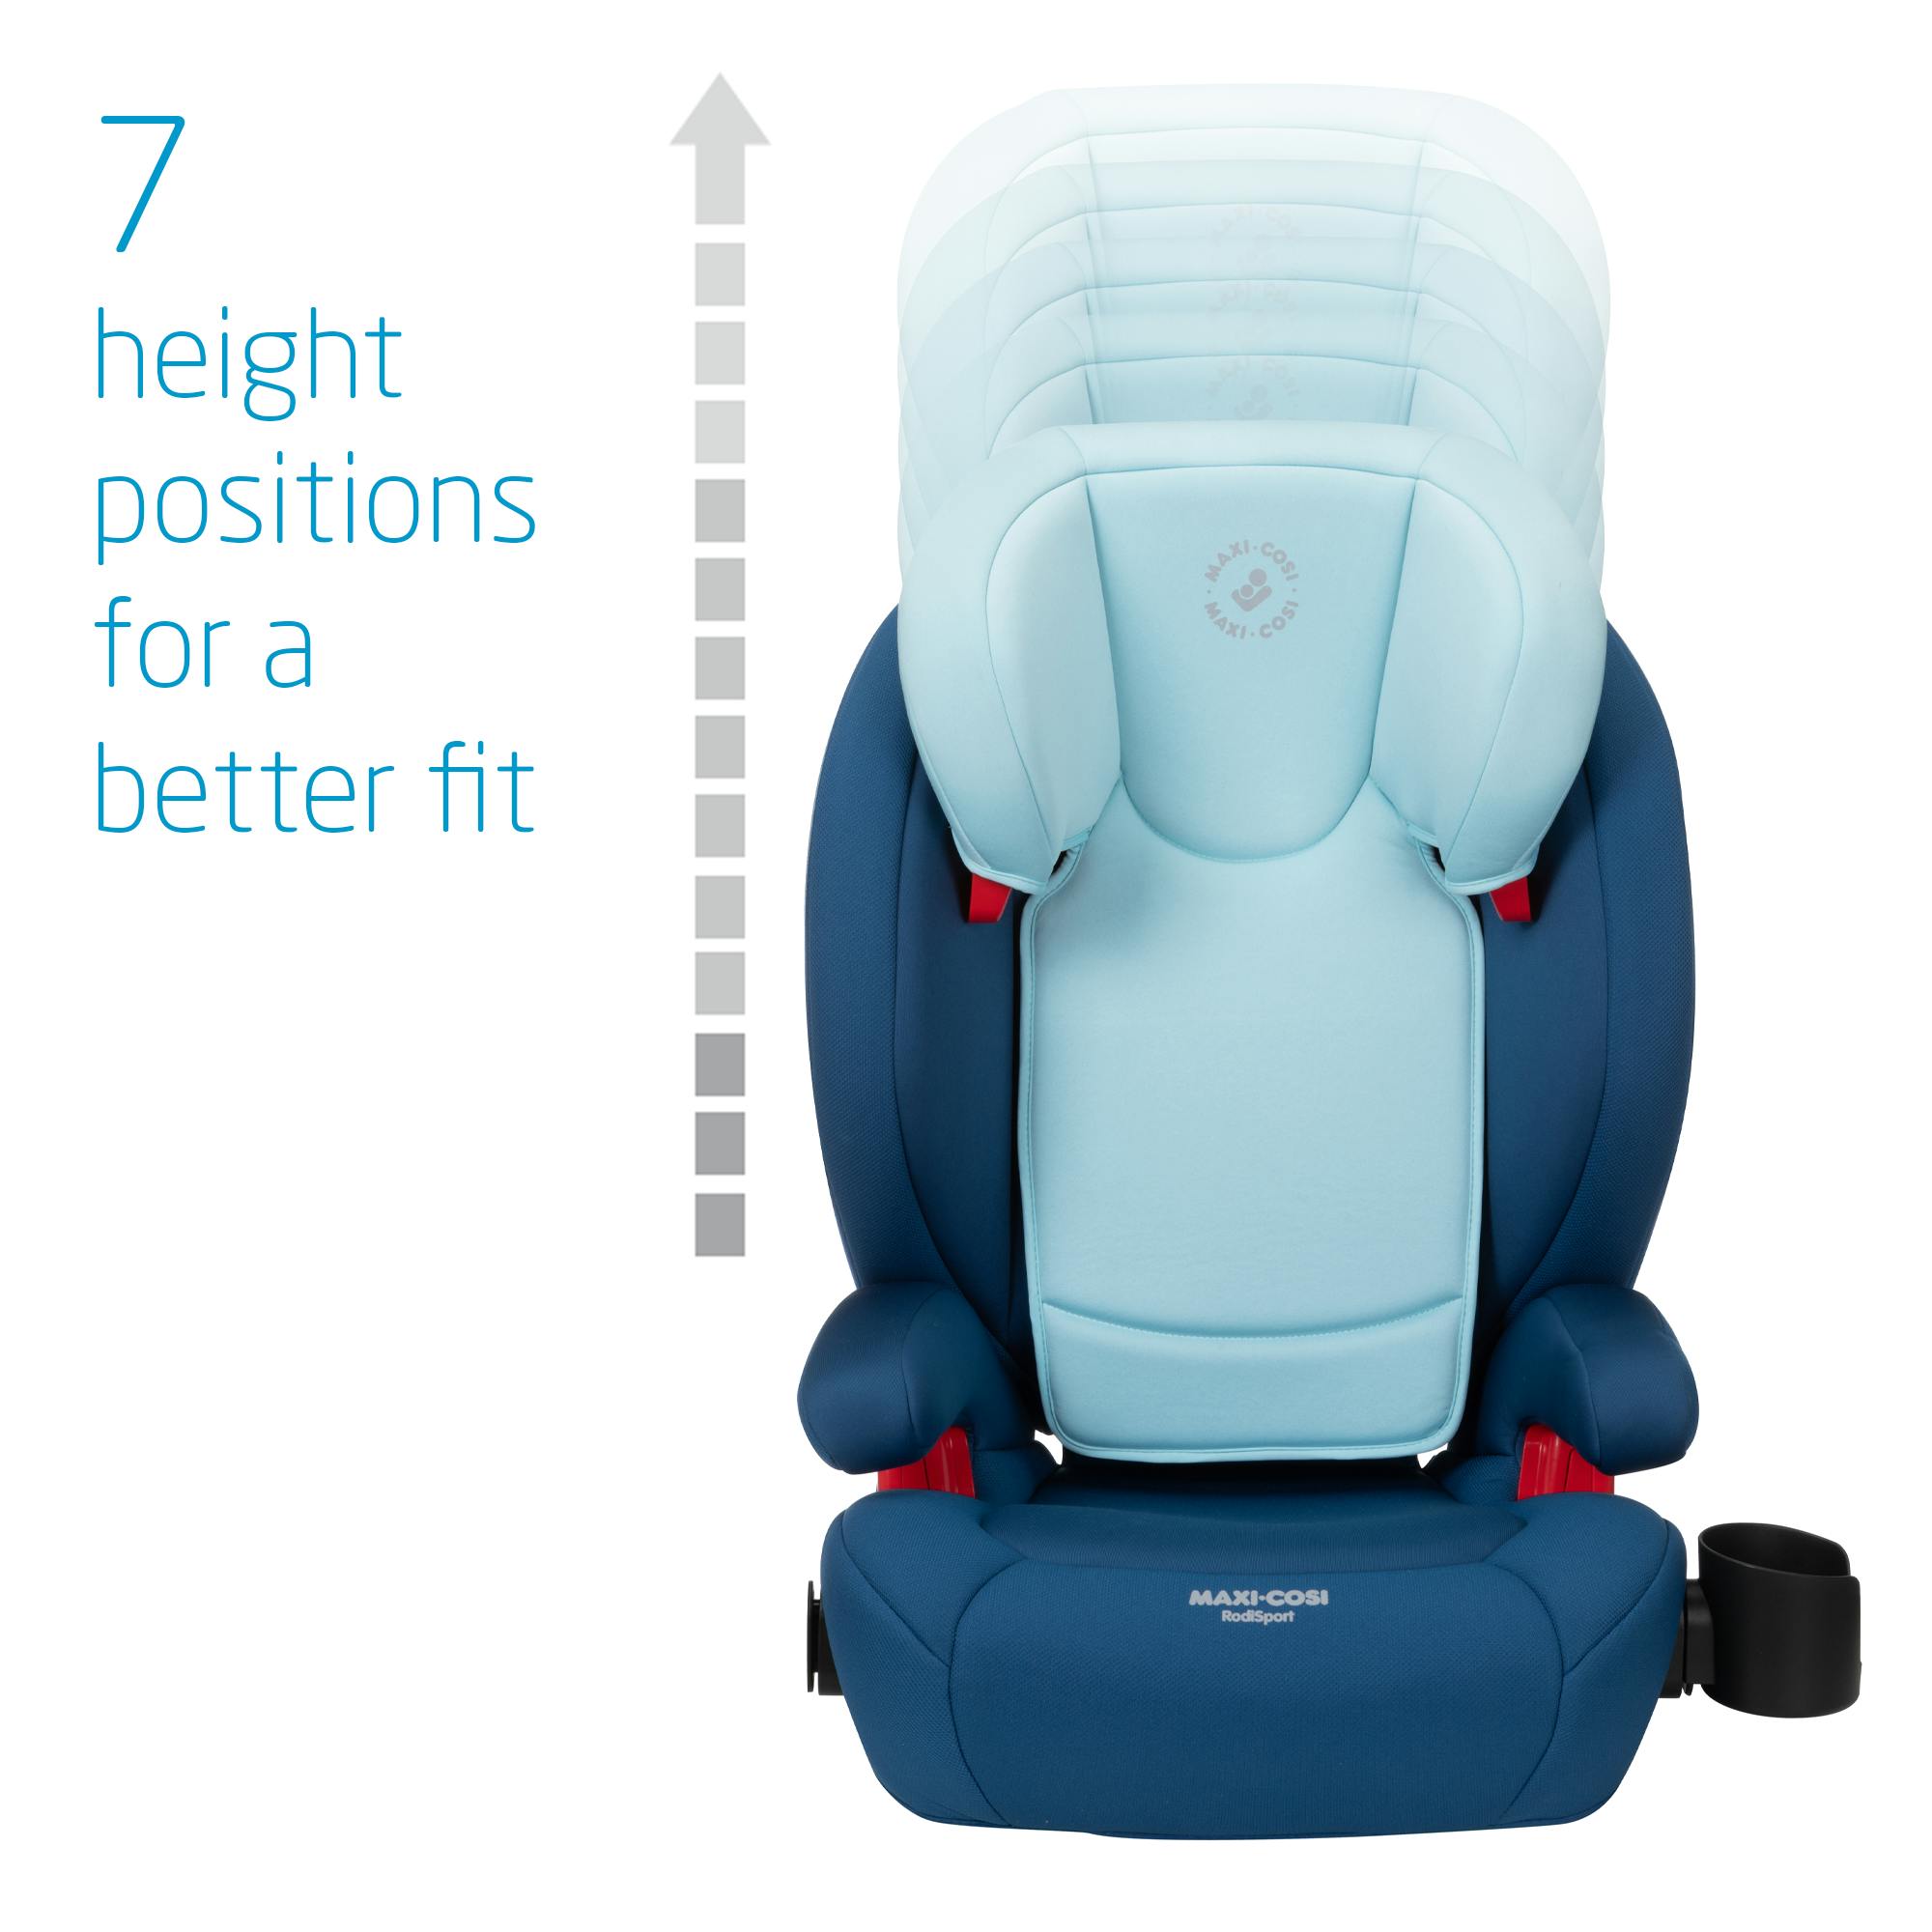 Maxi-Cosi RodiSport Booster Car Seat · Essential Blue